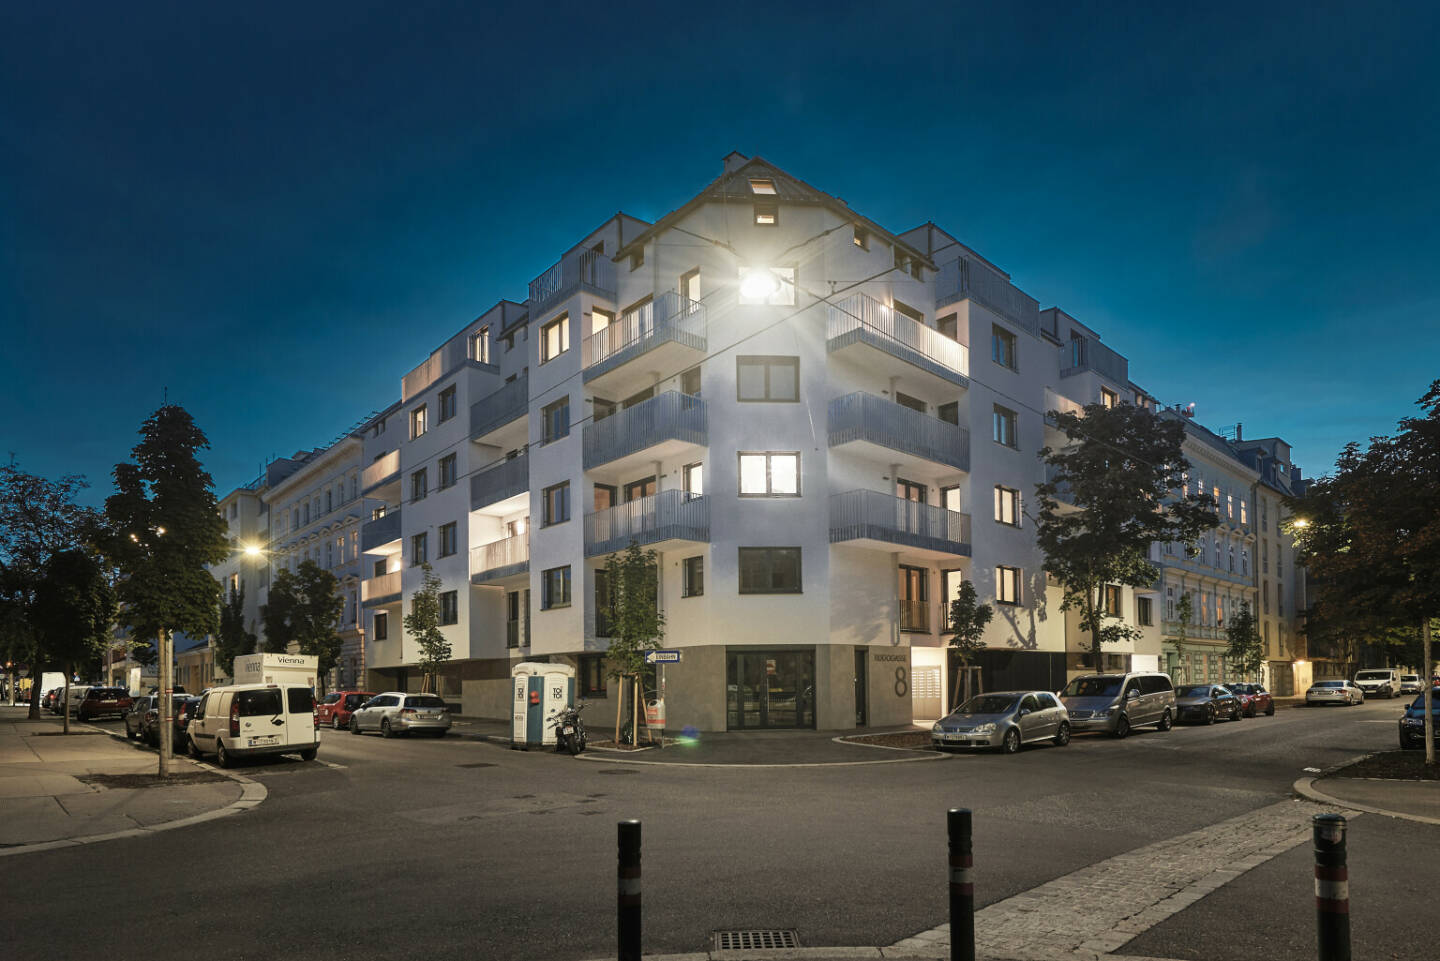 Winegg Realitäten GmbH: Vielfältiges Immobilienportfolio: WINEGG stellt 49 Eigentumswohnungen in Simmering fertig, Fotocredit:leofilm productions